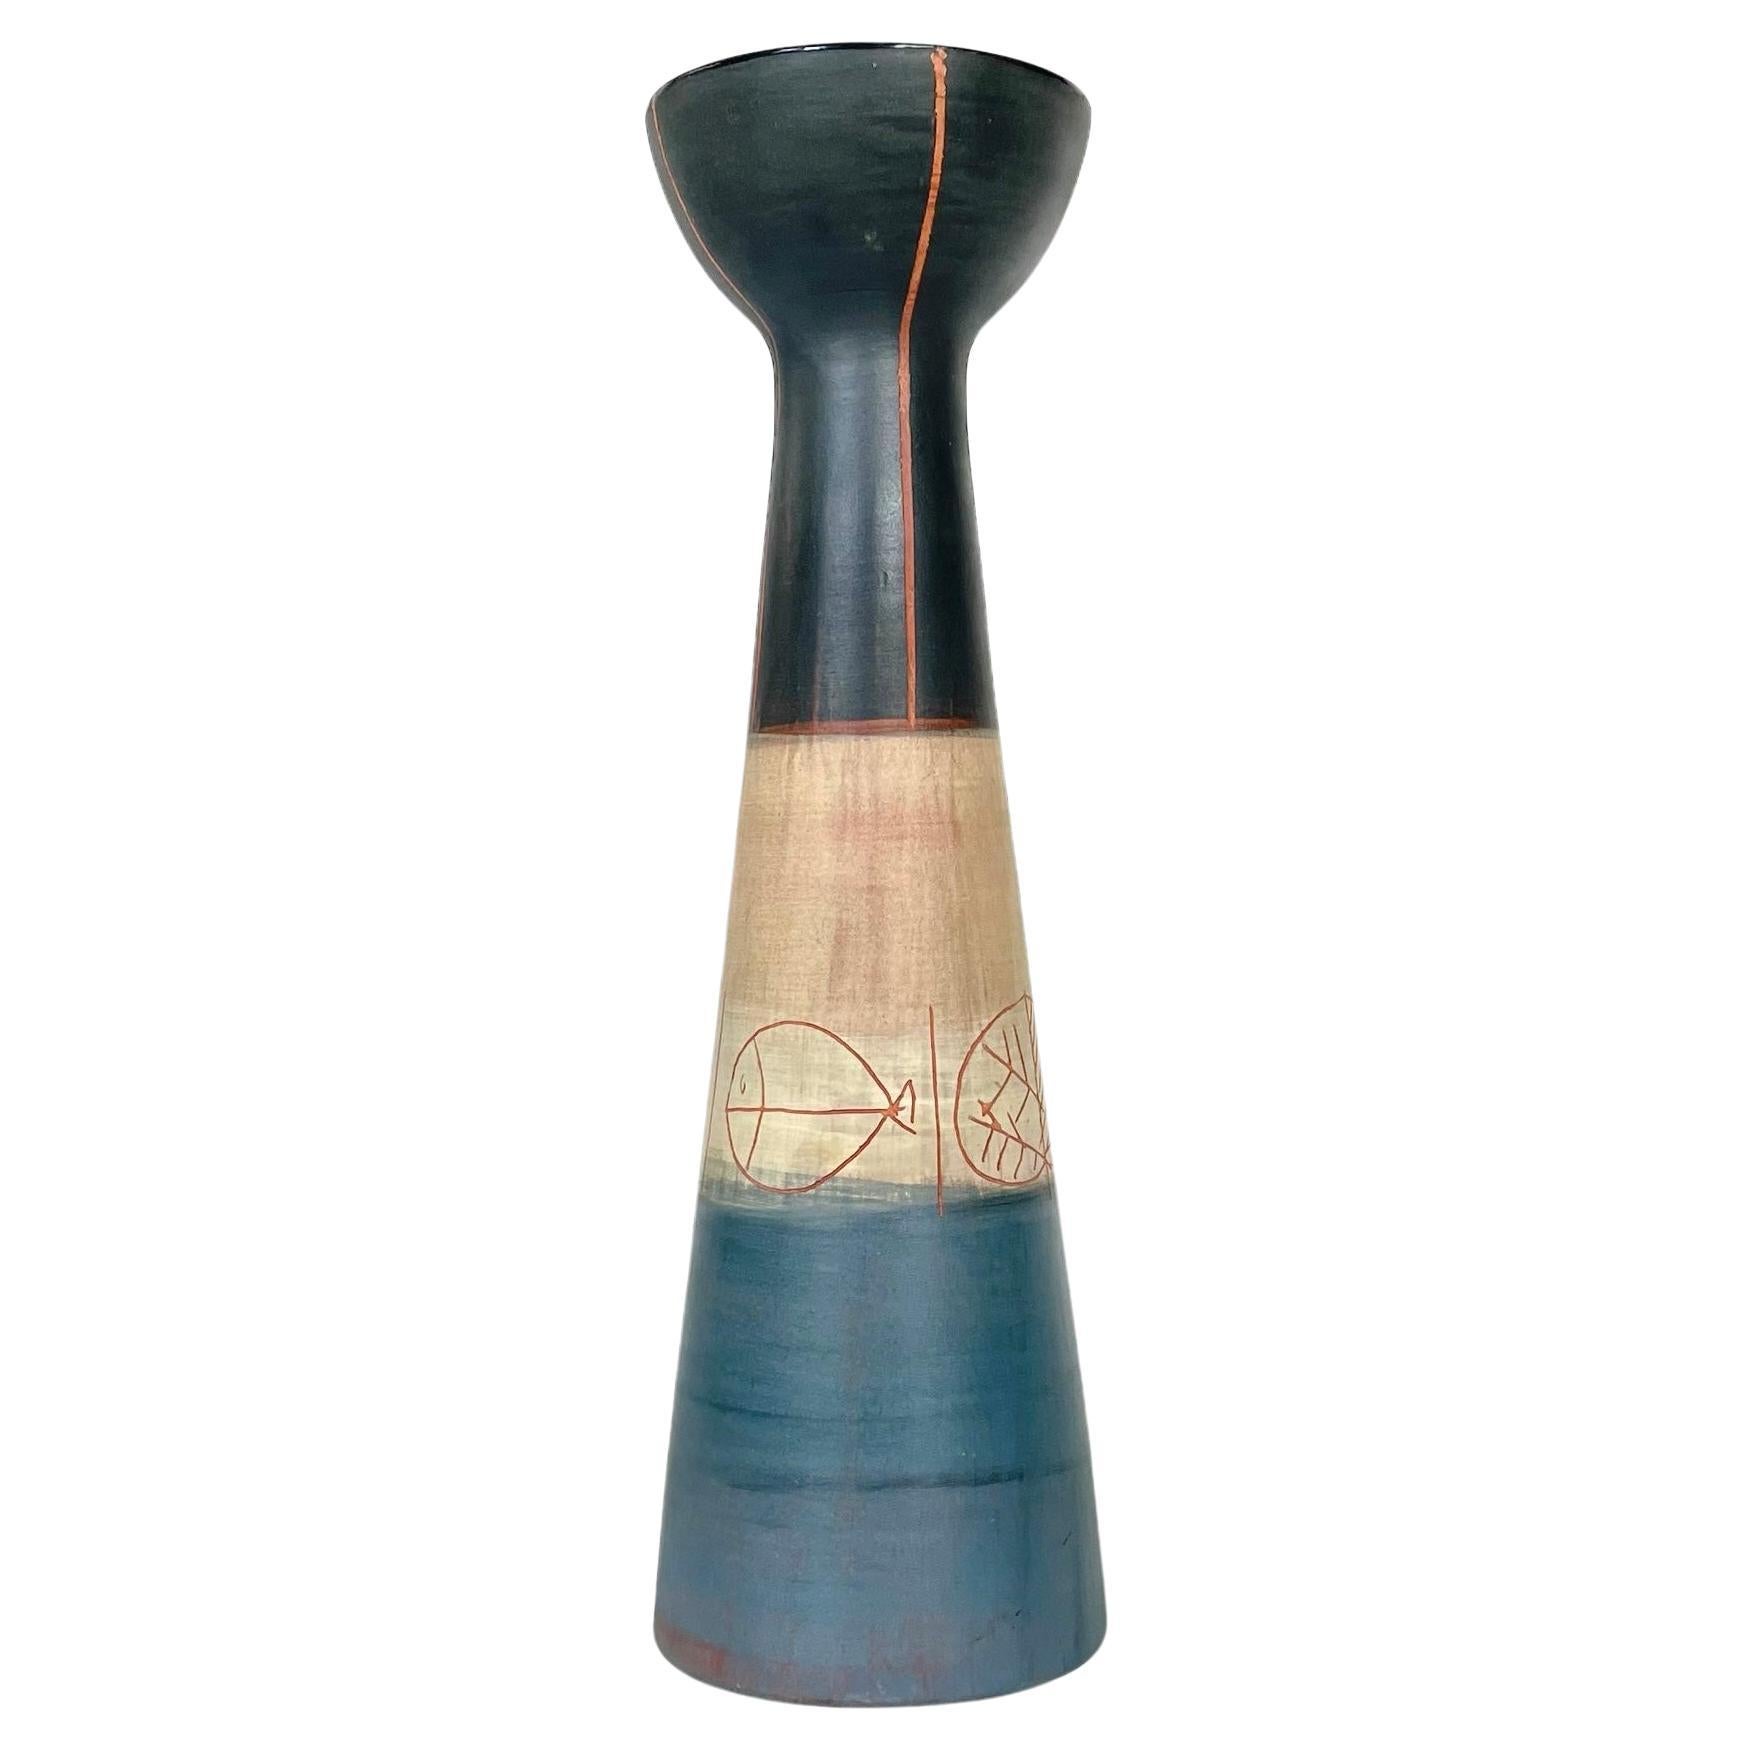 Ceramic vase by Jacques Innocenti, vallauris, 1957